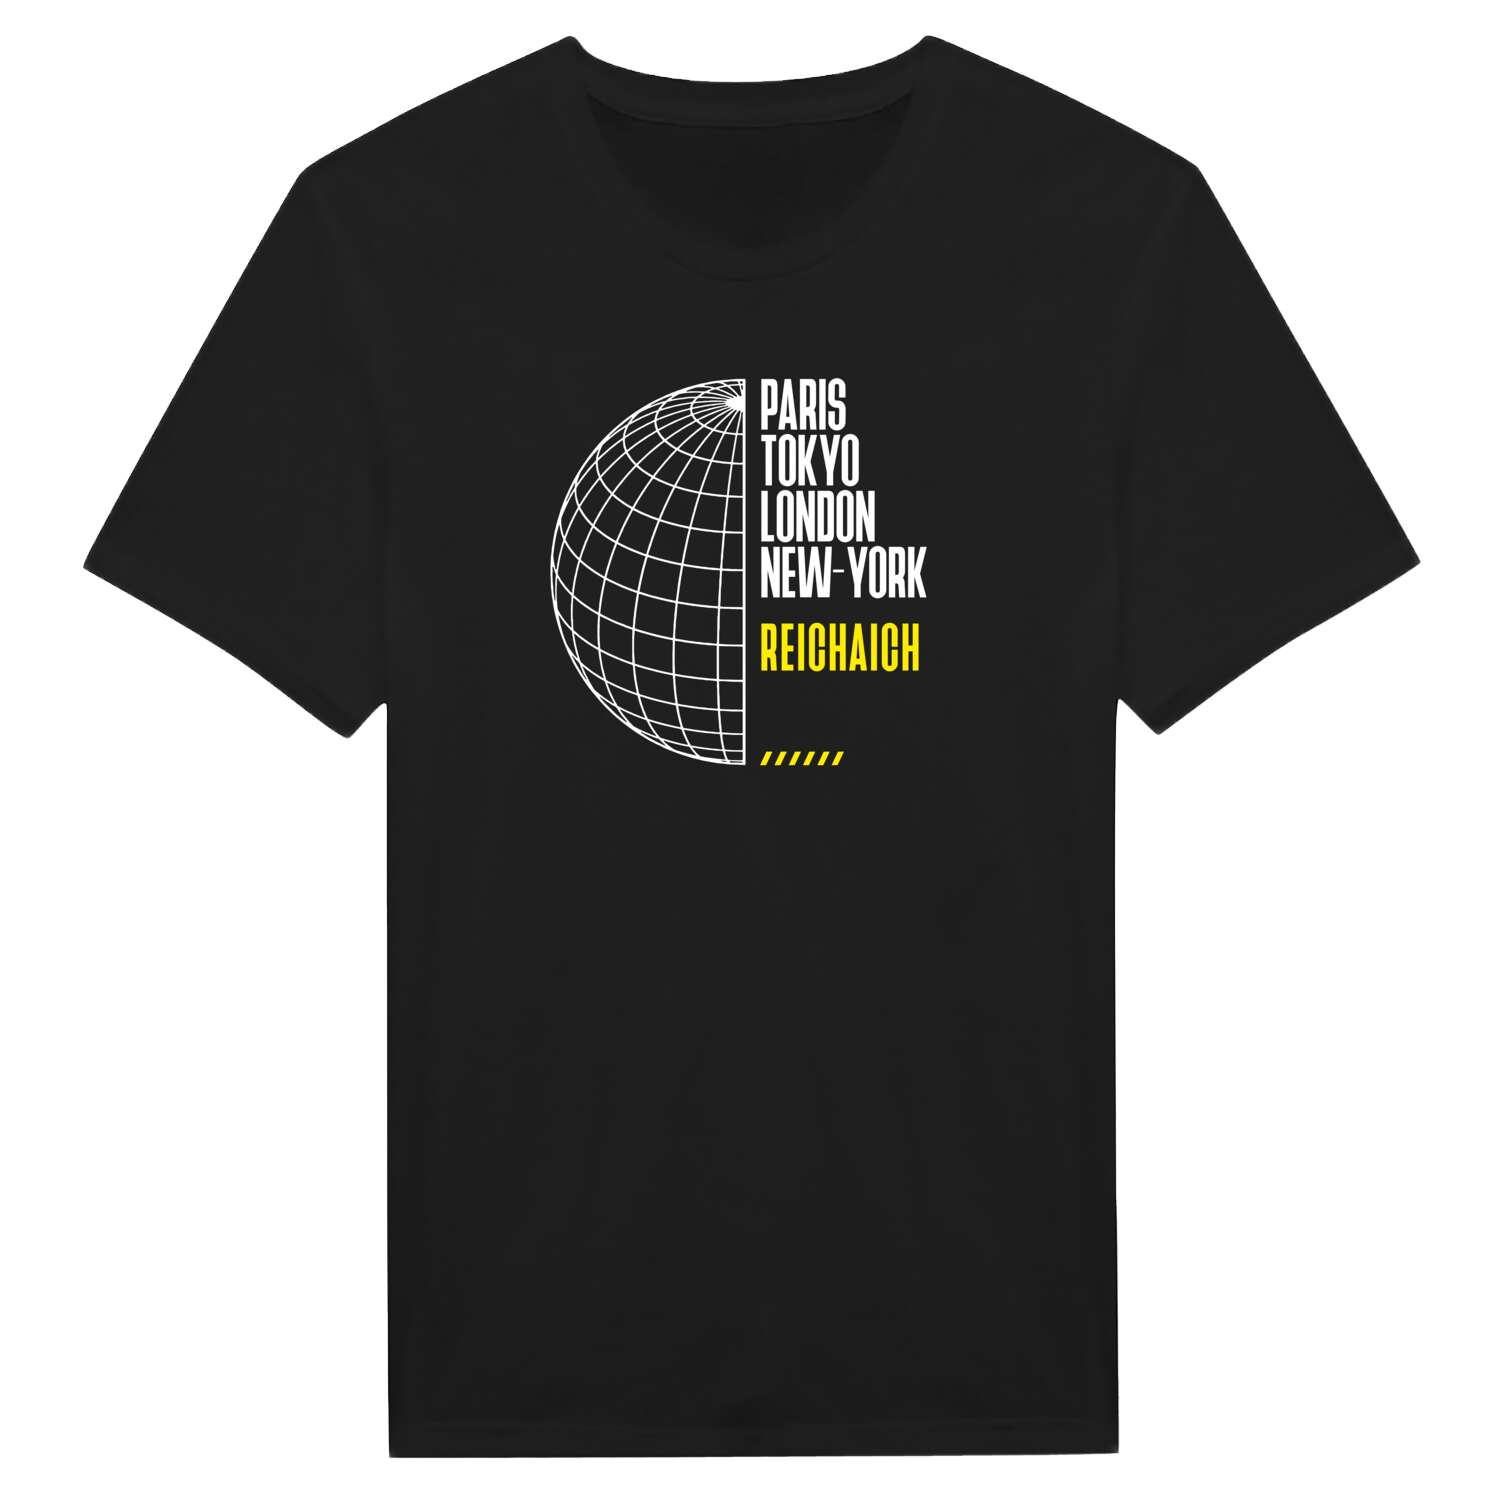 Reichaich T-Shirt »Paris Tokyo London«